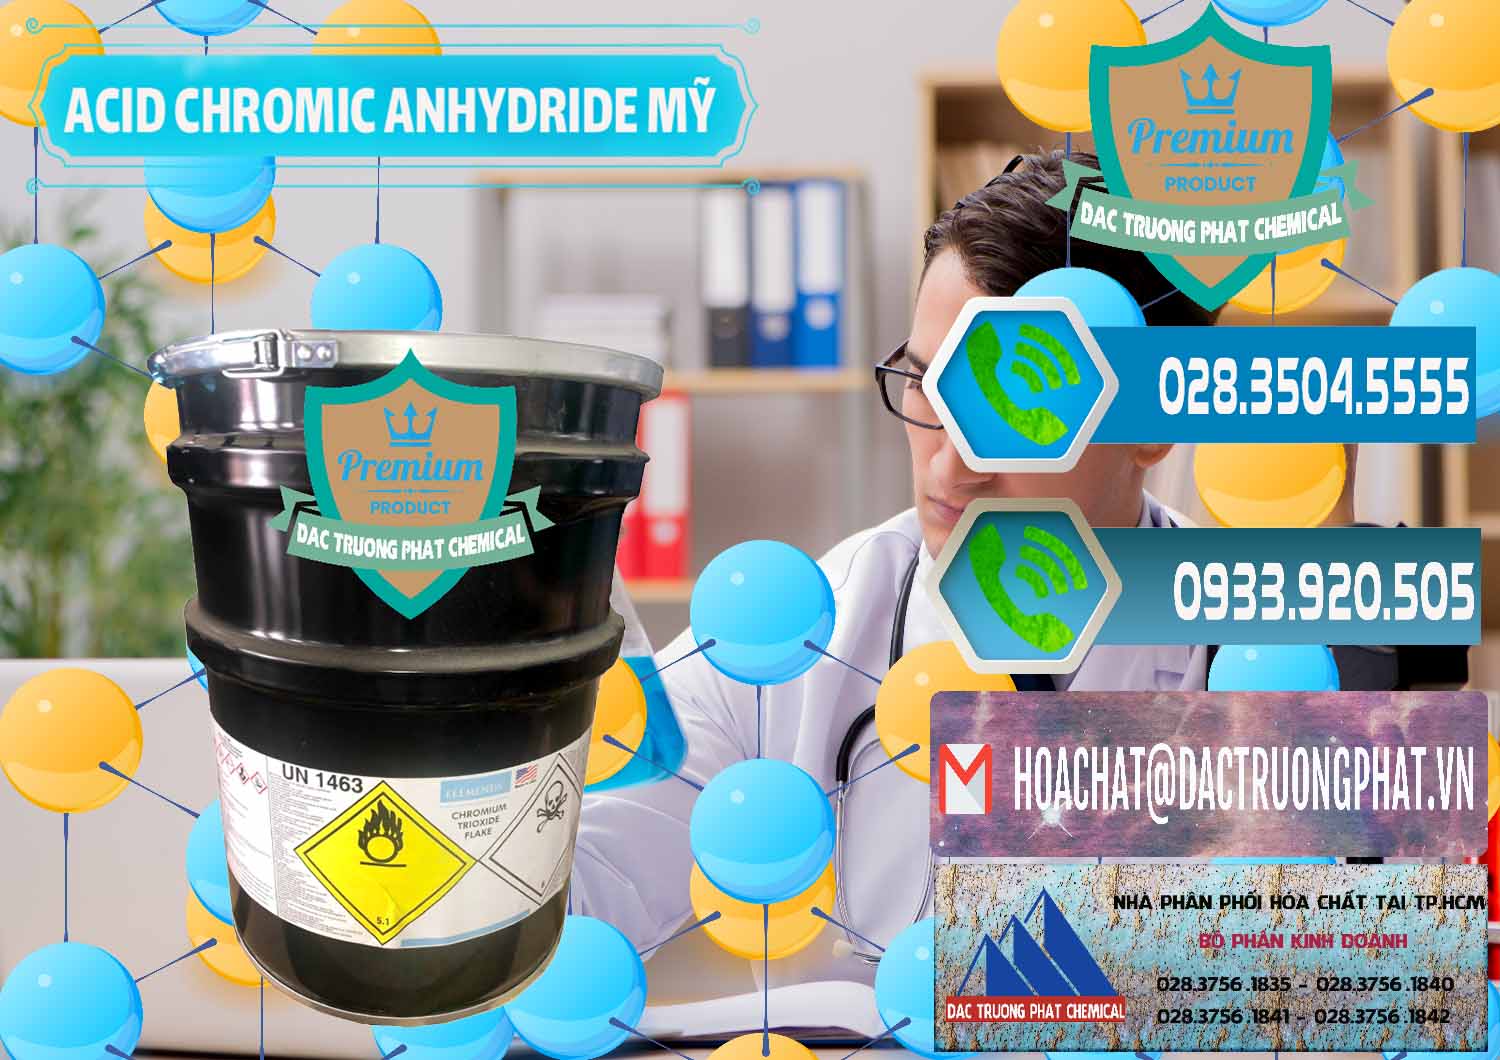 Đơn vị chuyên bán và cung cấp Acid Chromic Anhydride - Cromic CRO3 USA Mỹ - 0364 - Đơn vị bán _ cung cấp hóa chất tại TP.HCM - congtyhoachat.net